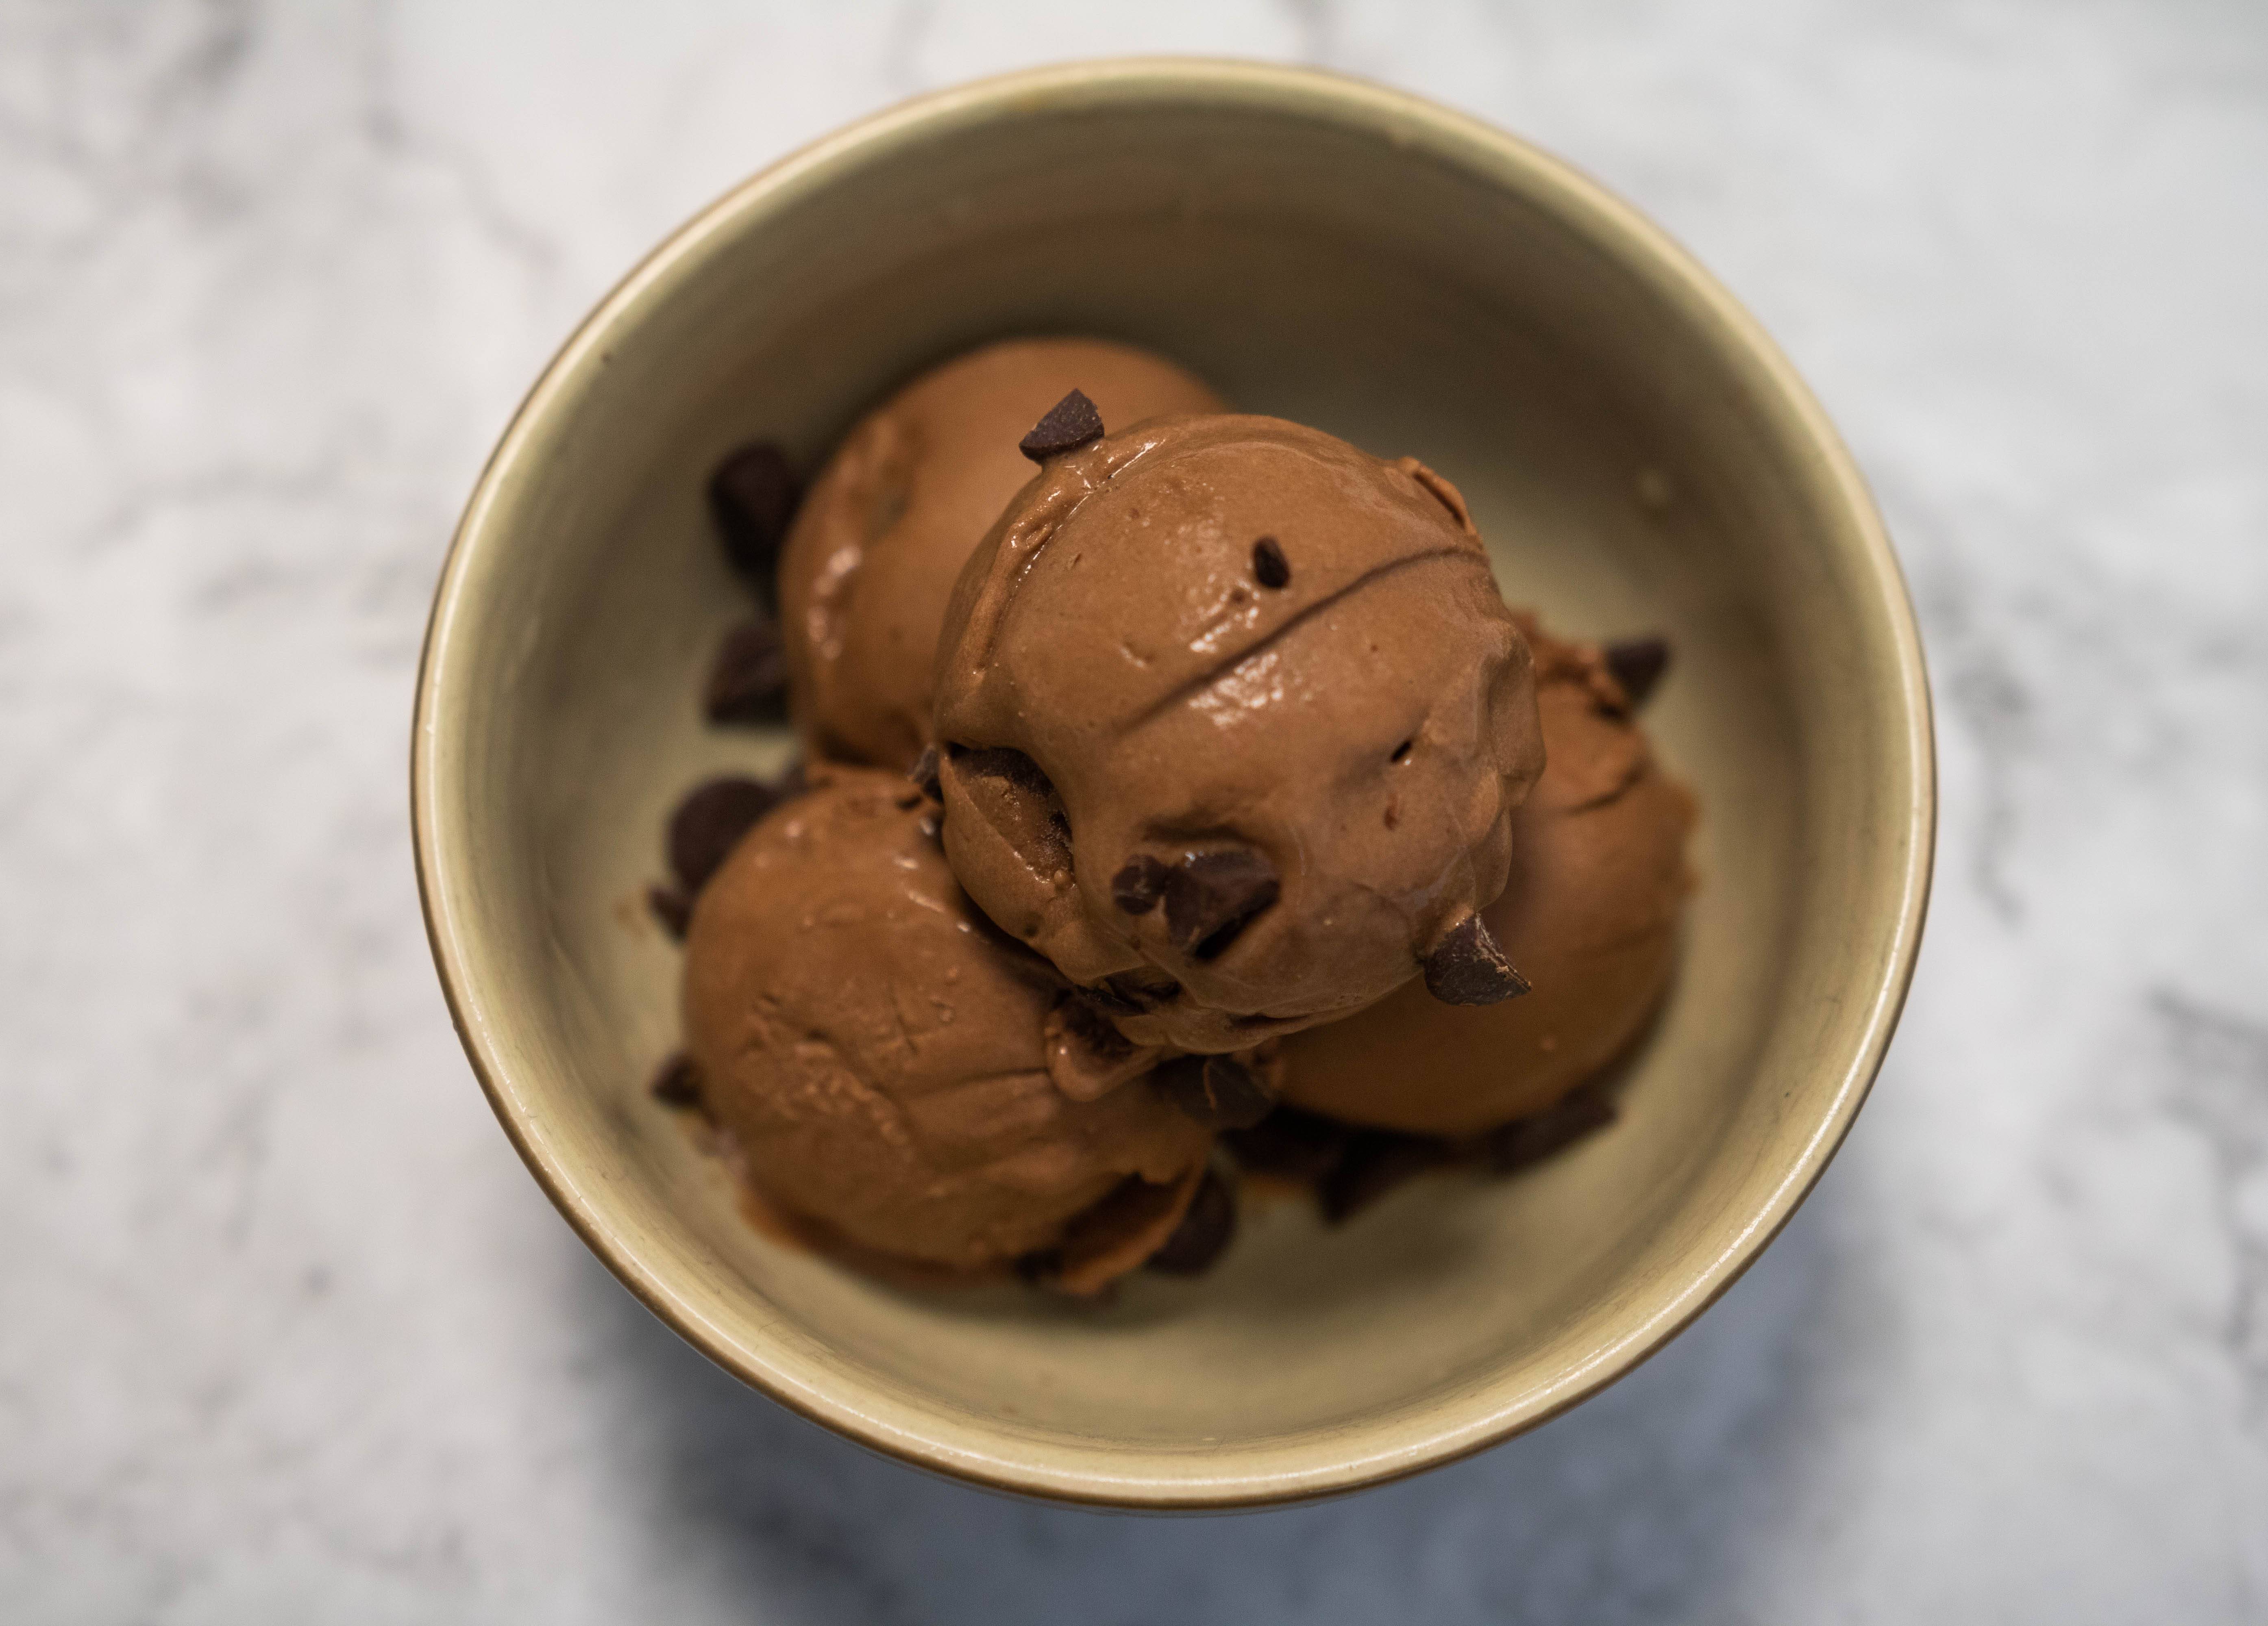 Roasted Chocolate Ice Cream - 500 ml tub